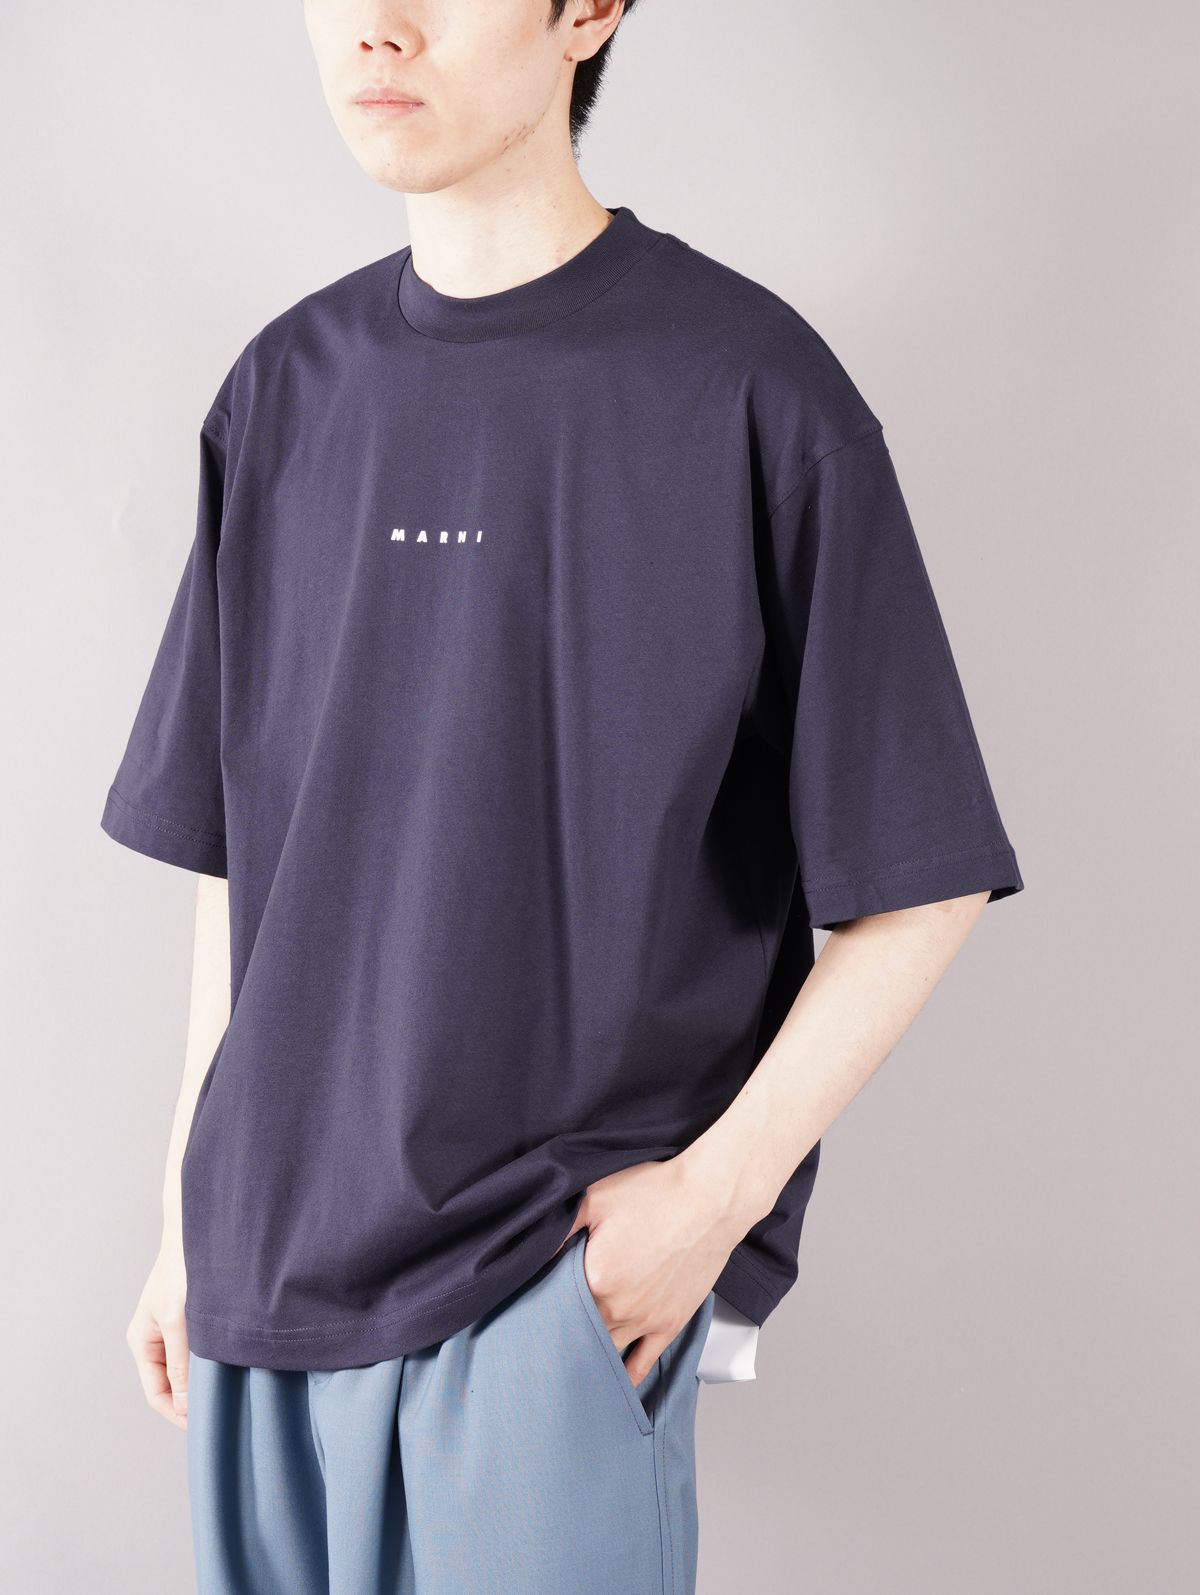 MARNI - 【ラスト1点】 LOGO T-SHIRT / ロゴ Tシャツ / オーバー